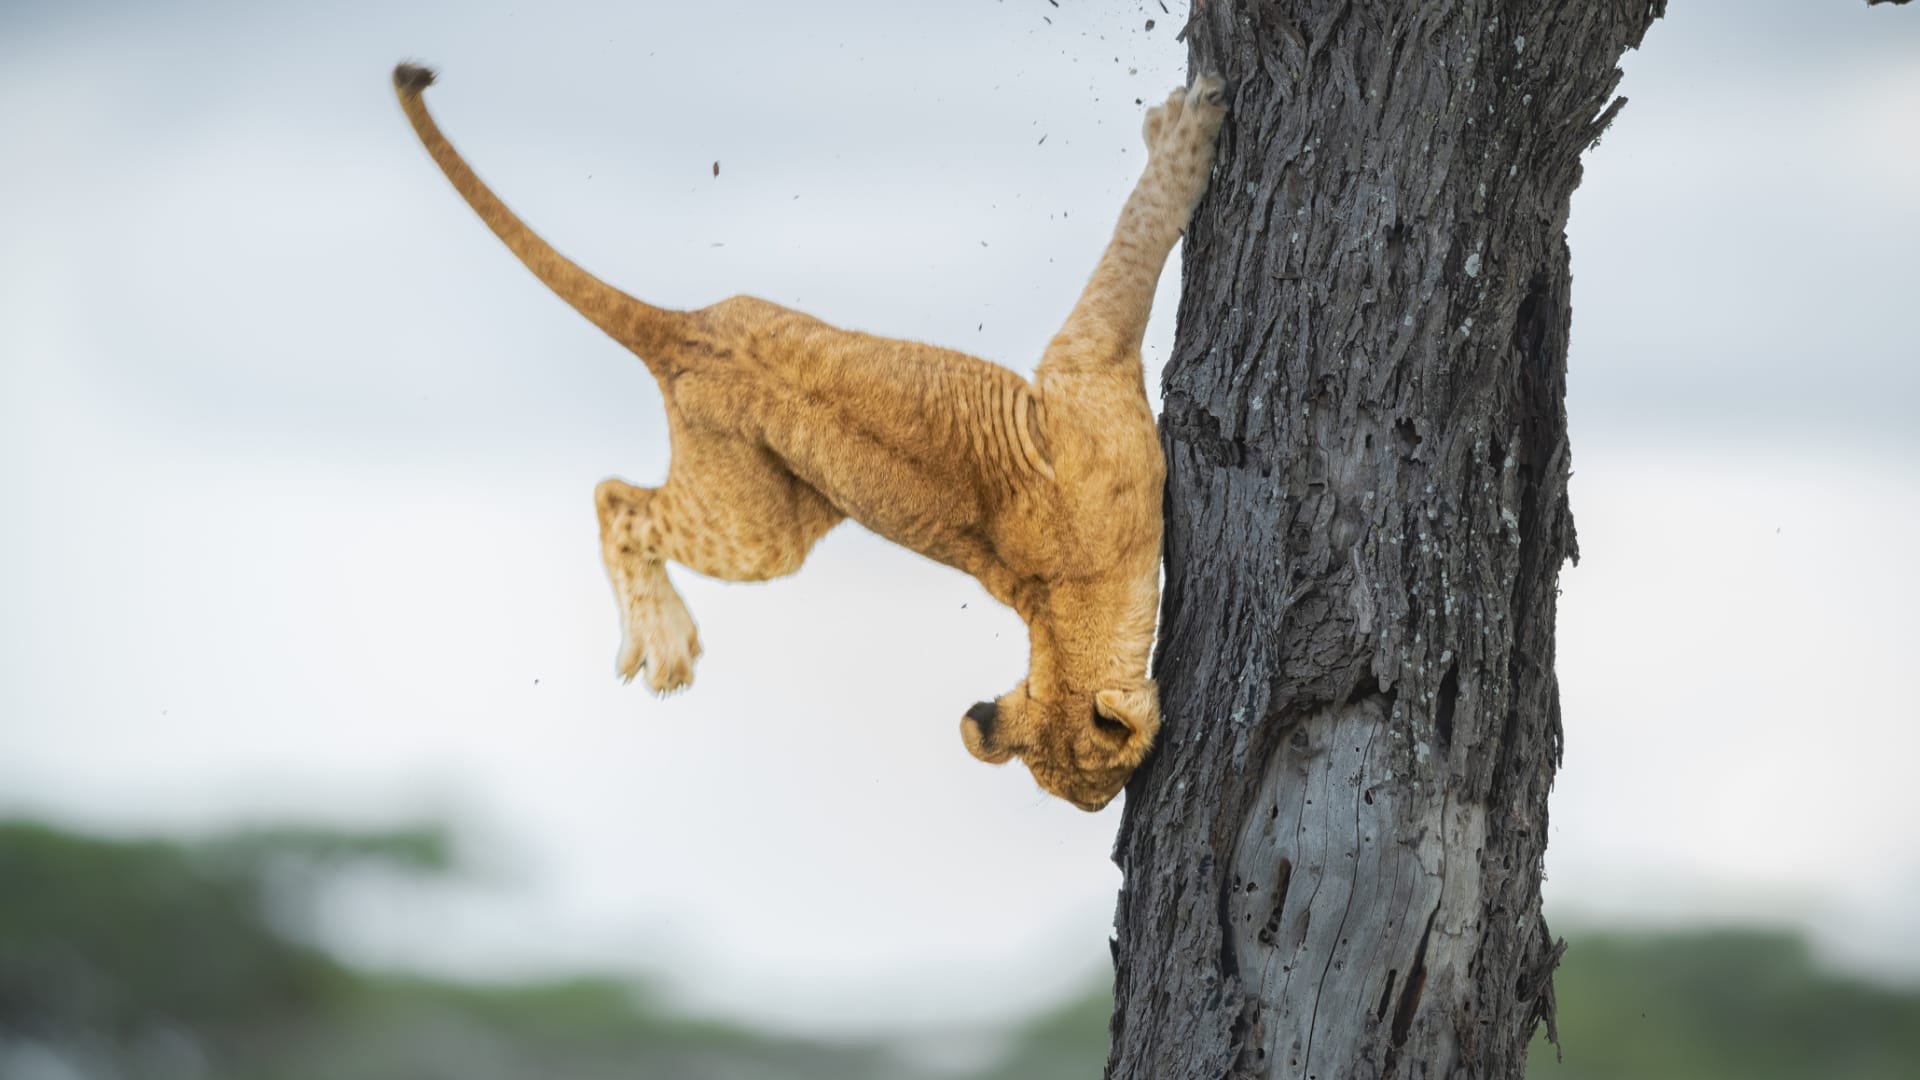 في تنزانيا.. مصورة توثق شبل أسد "جُرِح كبرياءه" عند سقوطه من شجرة